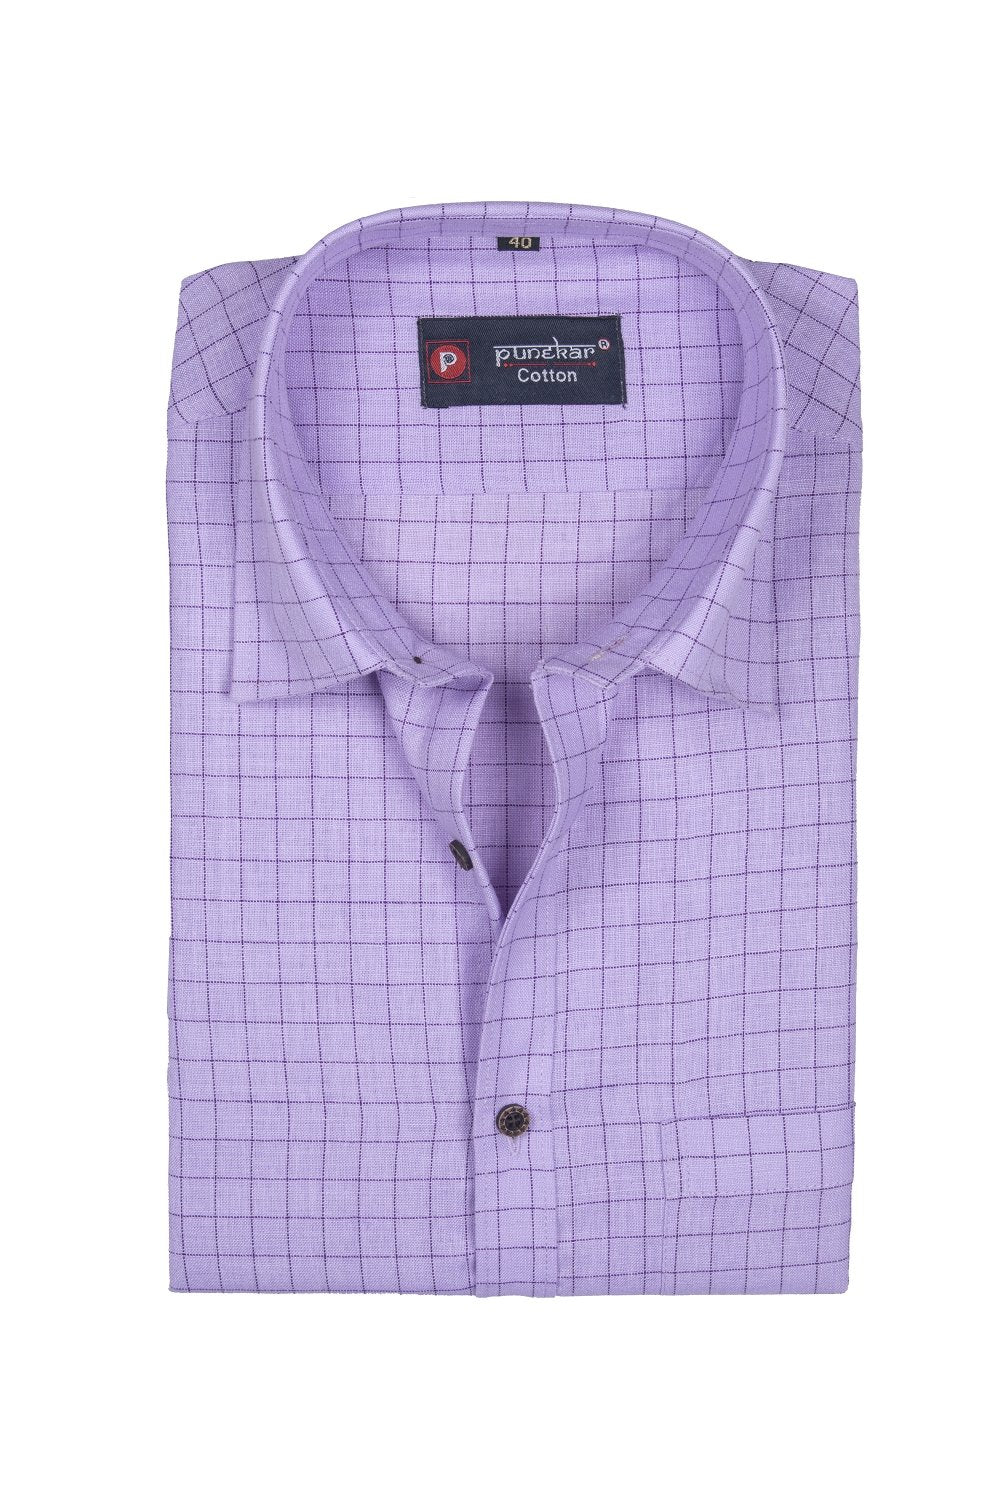 Punekar Cotton Purple Color Check Criss Cross Woven Cotton Shirt for Men&